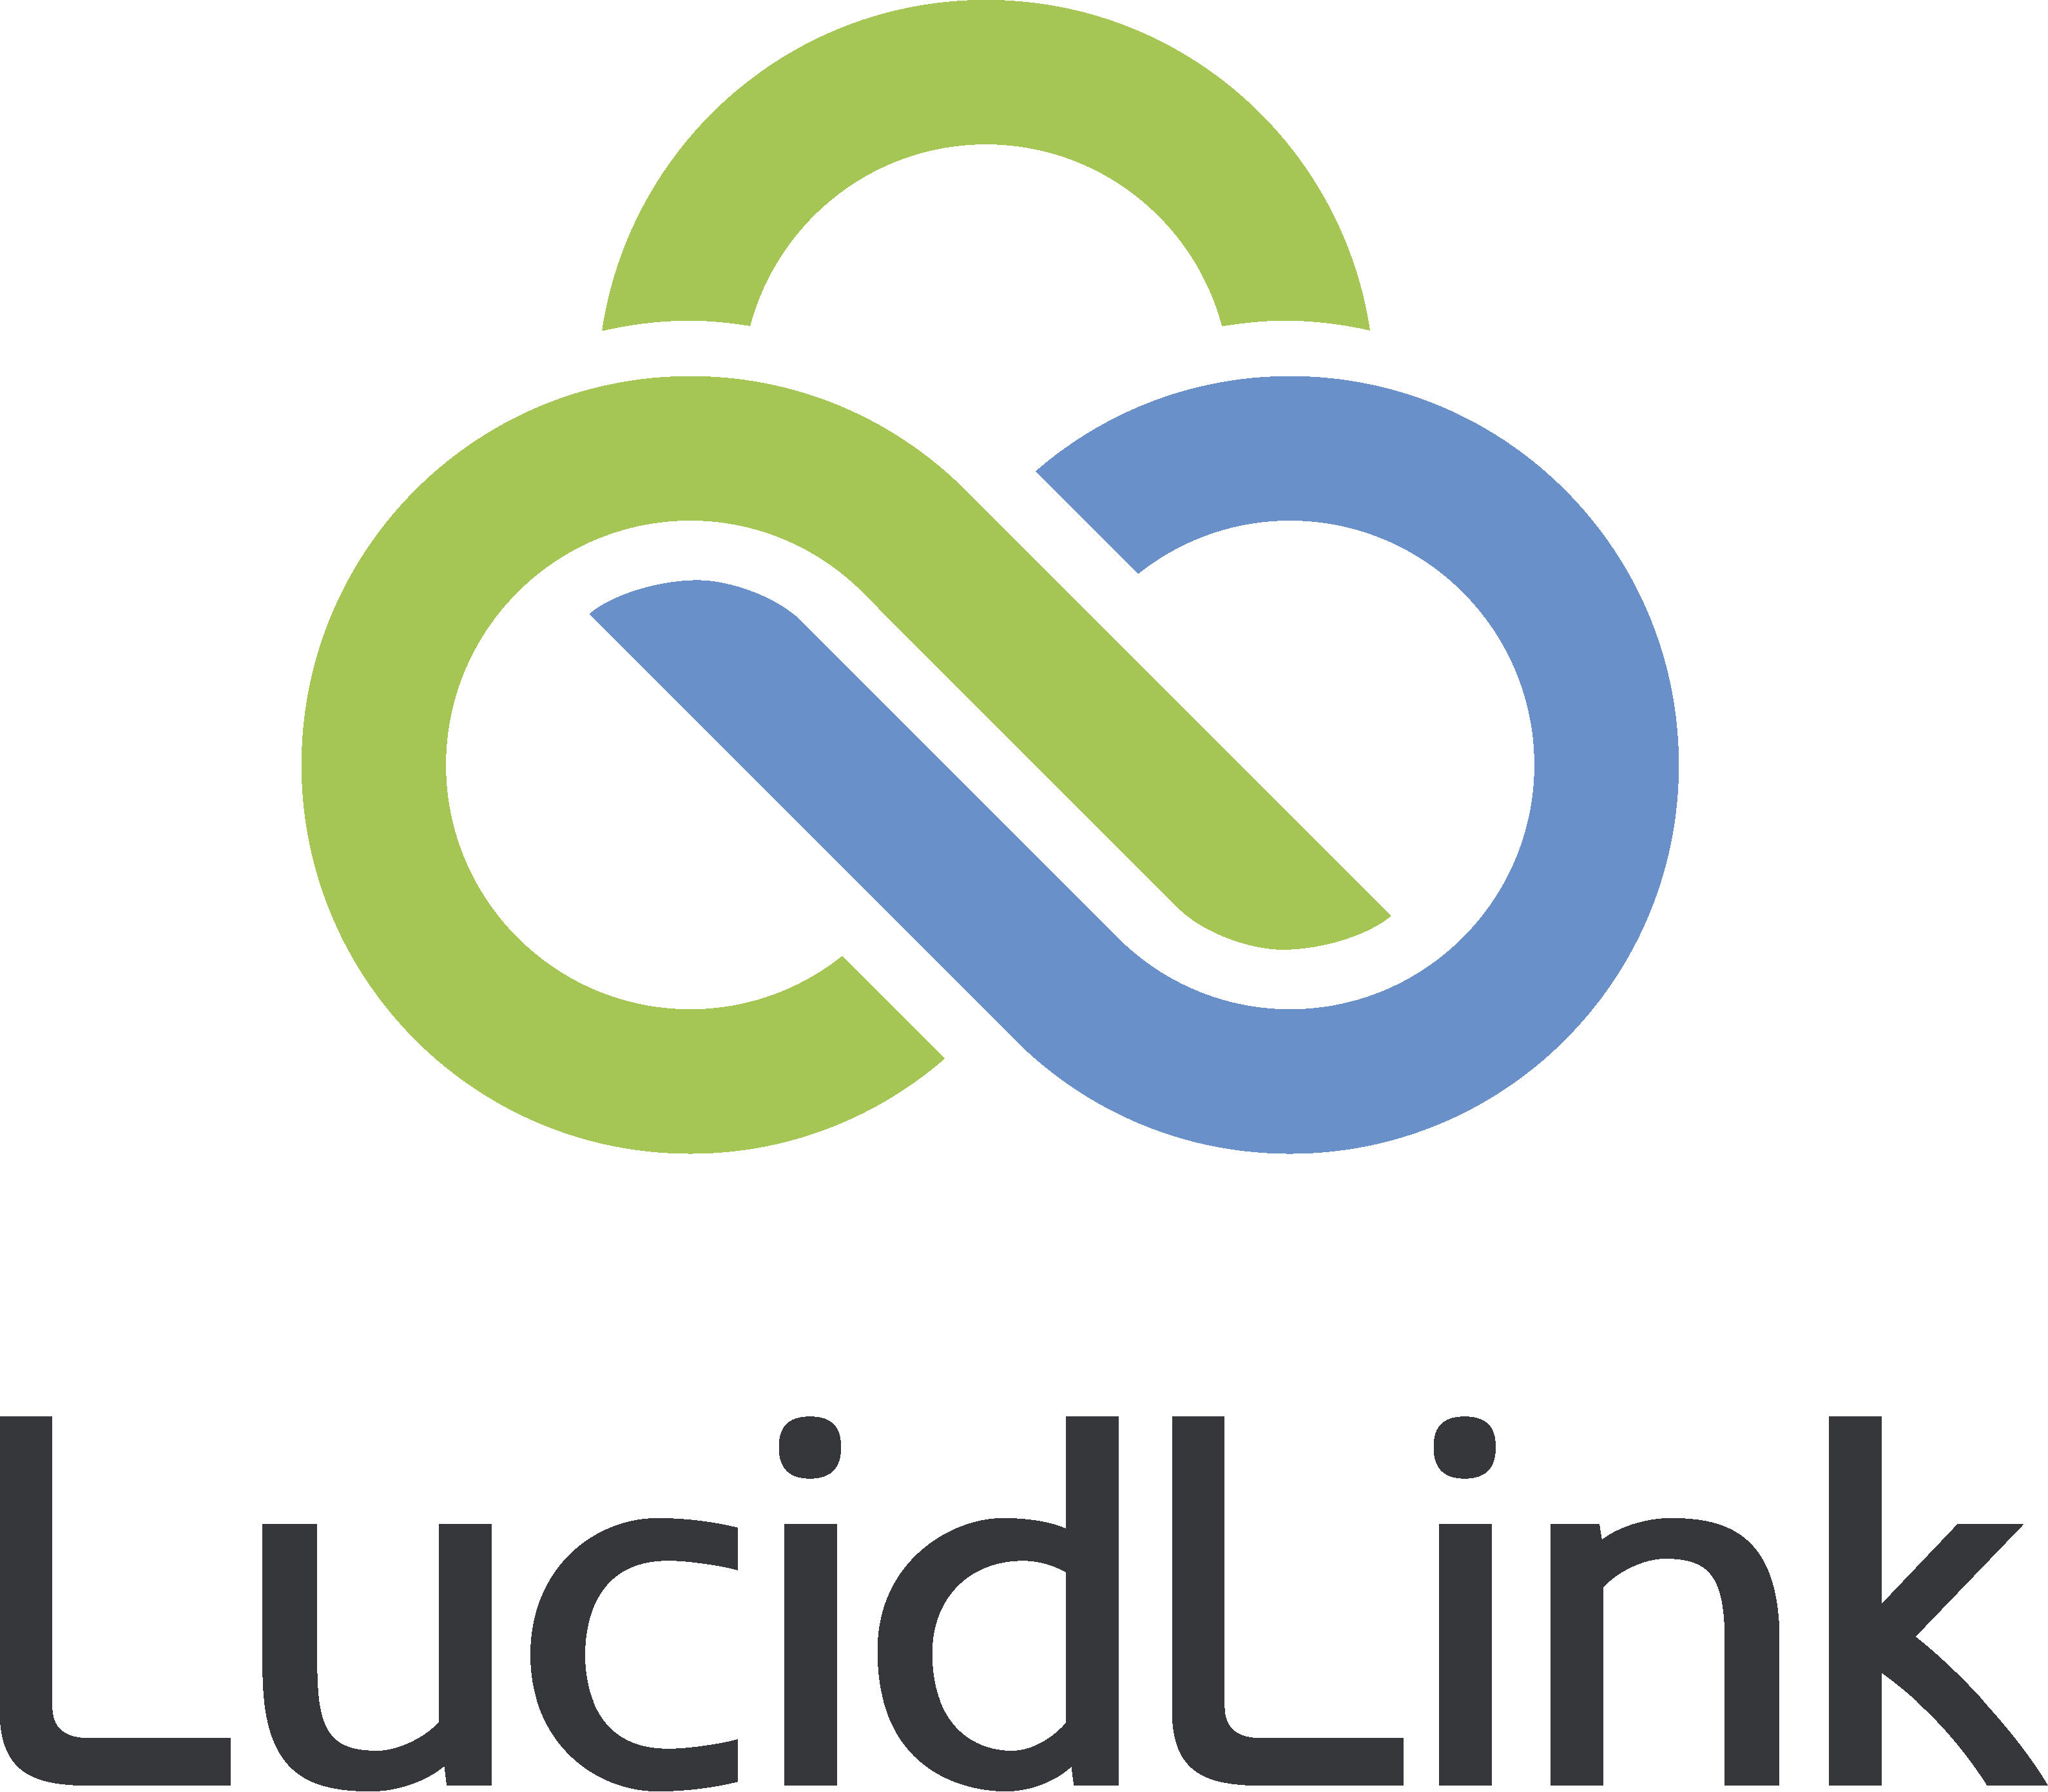 LucidLink